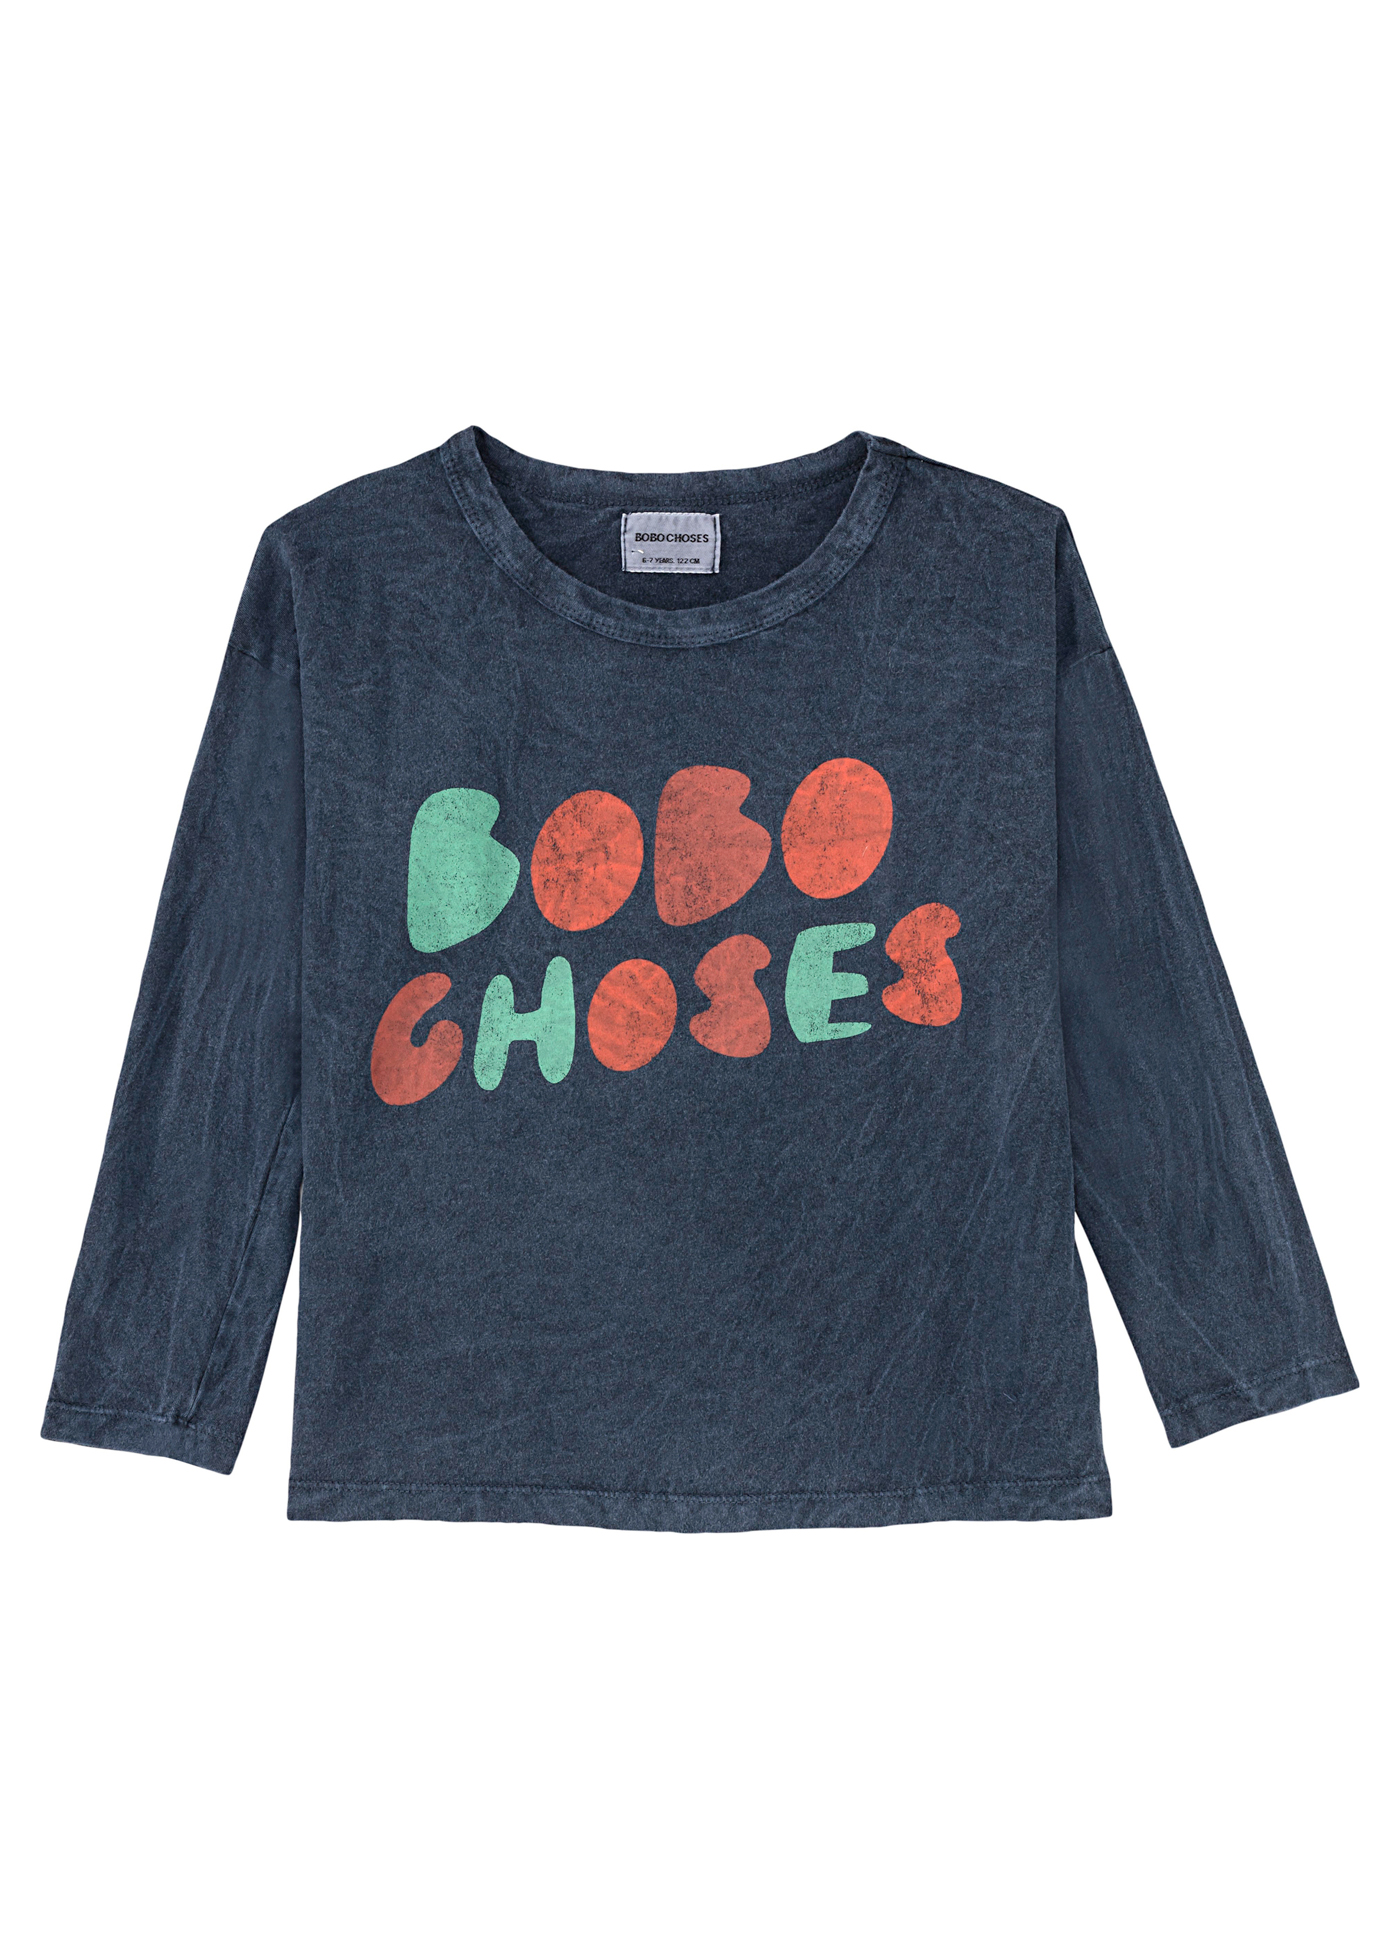 Bobo Choses long sleeve T-shirt image number 0